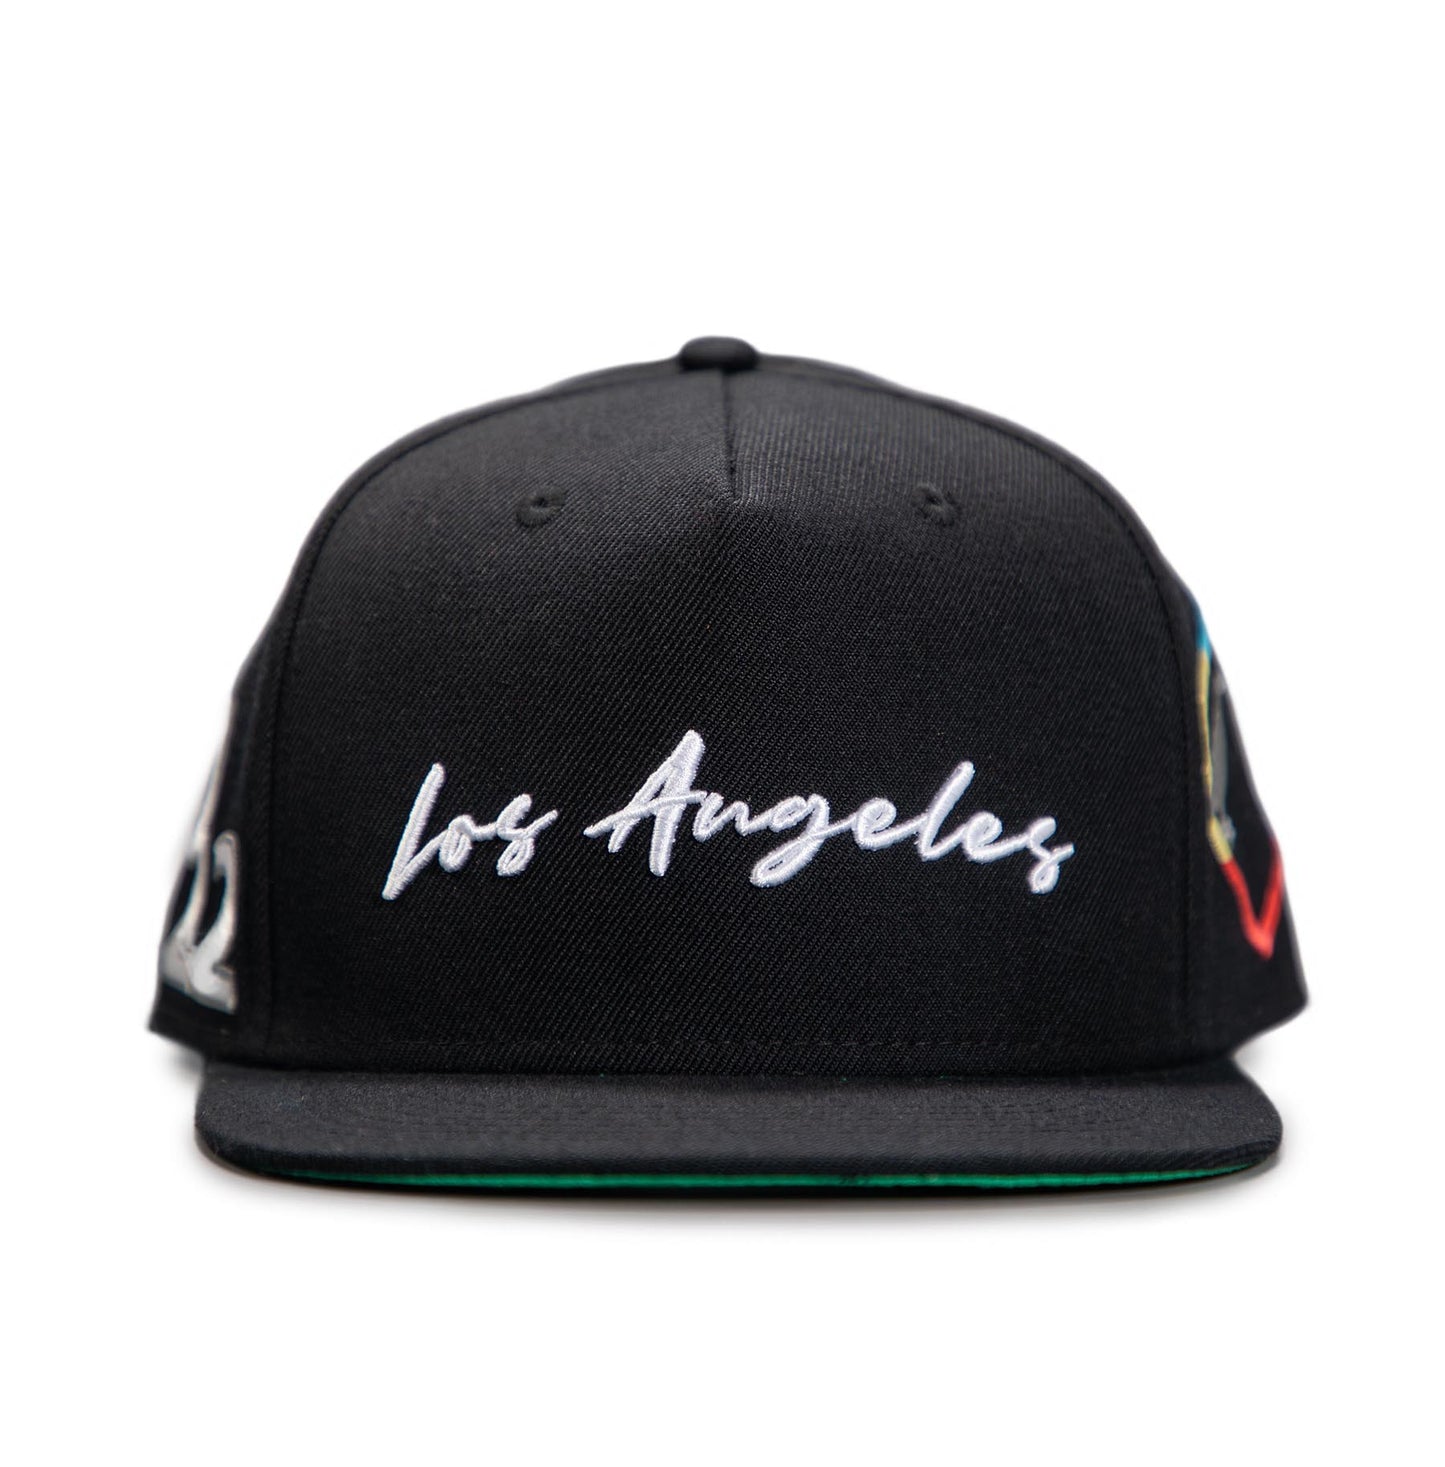 2.0 Los Angeles Cap (Blk) - Bedstuyfly